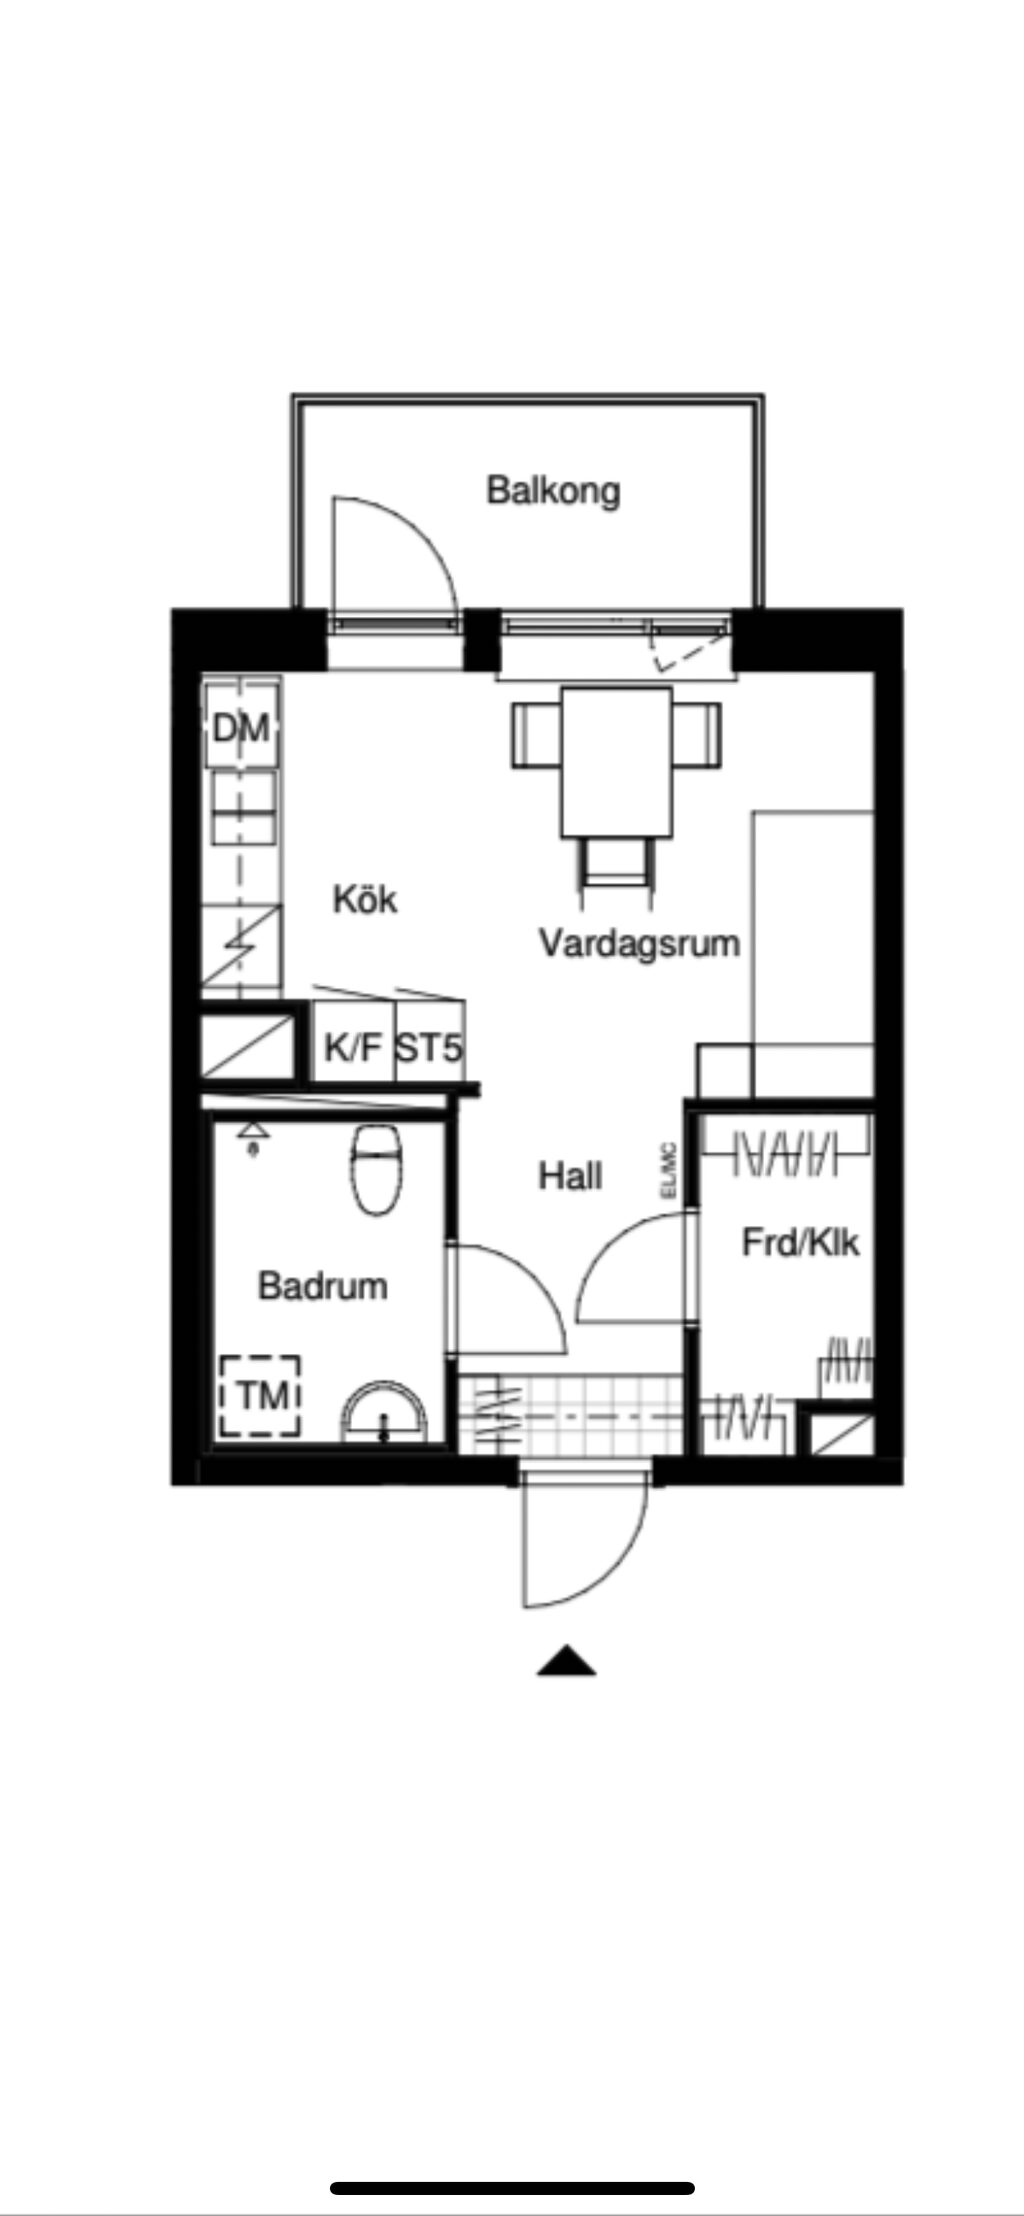 Lägenhetsbyte - Astrabacken 8A